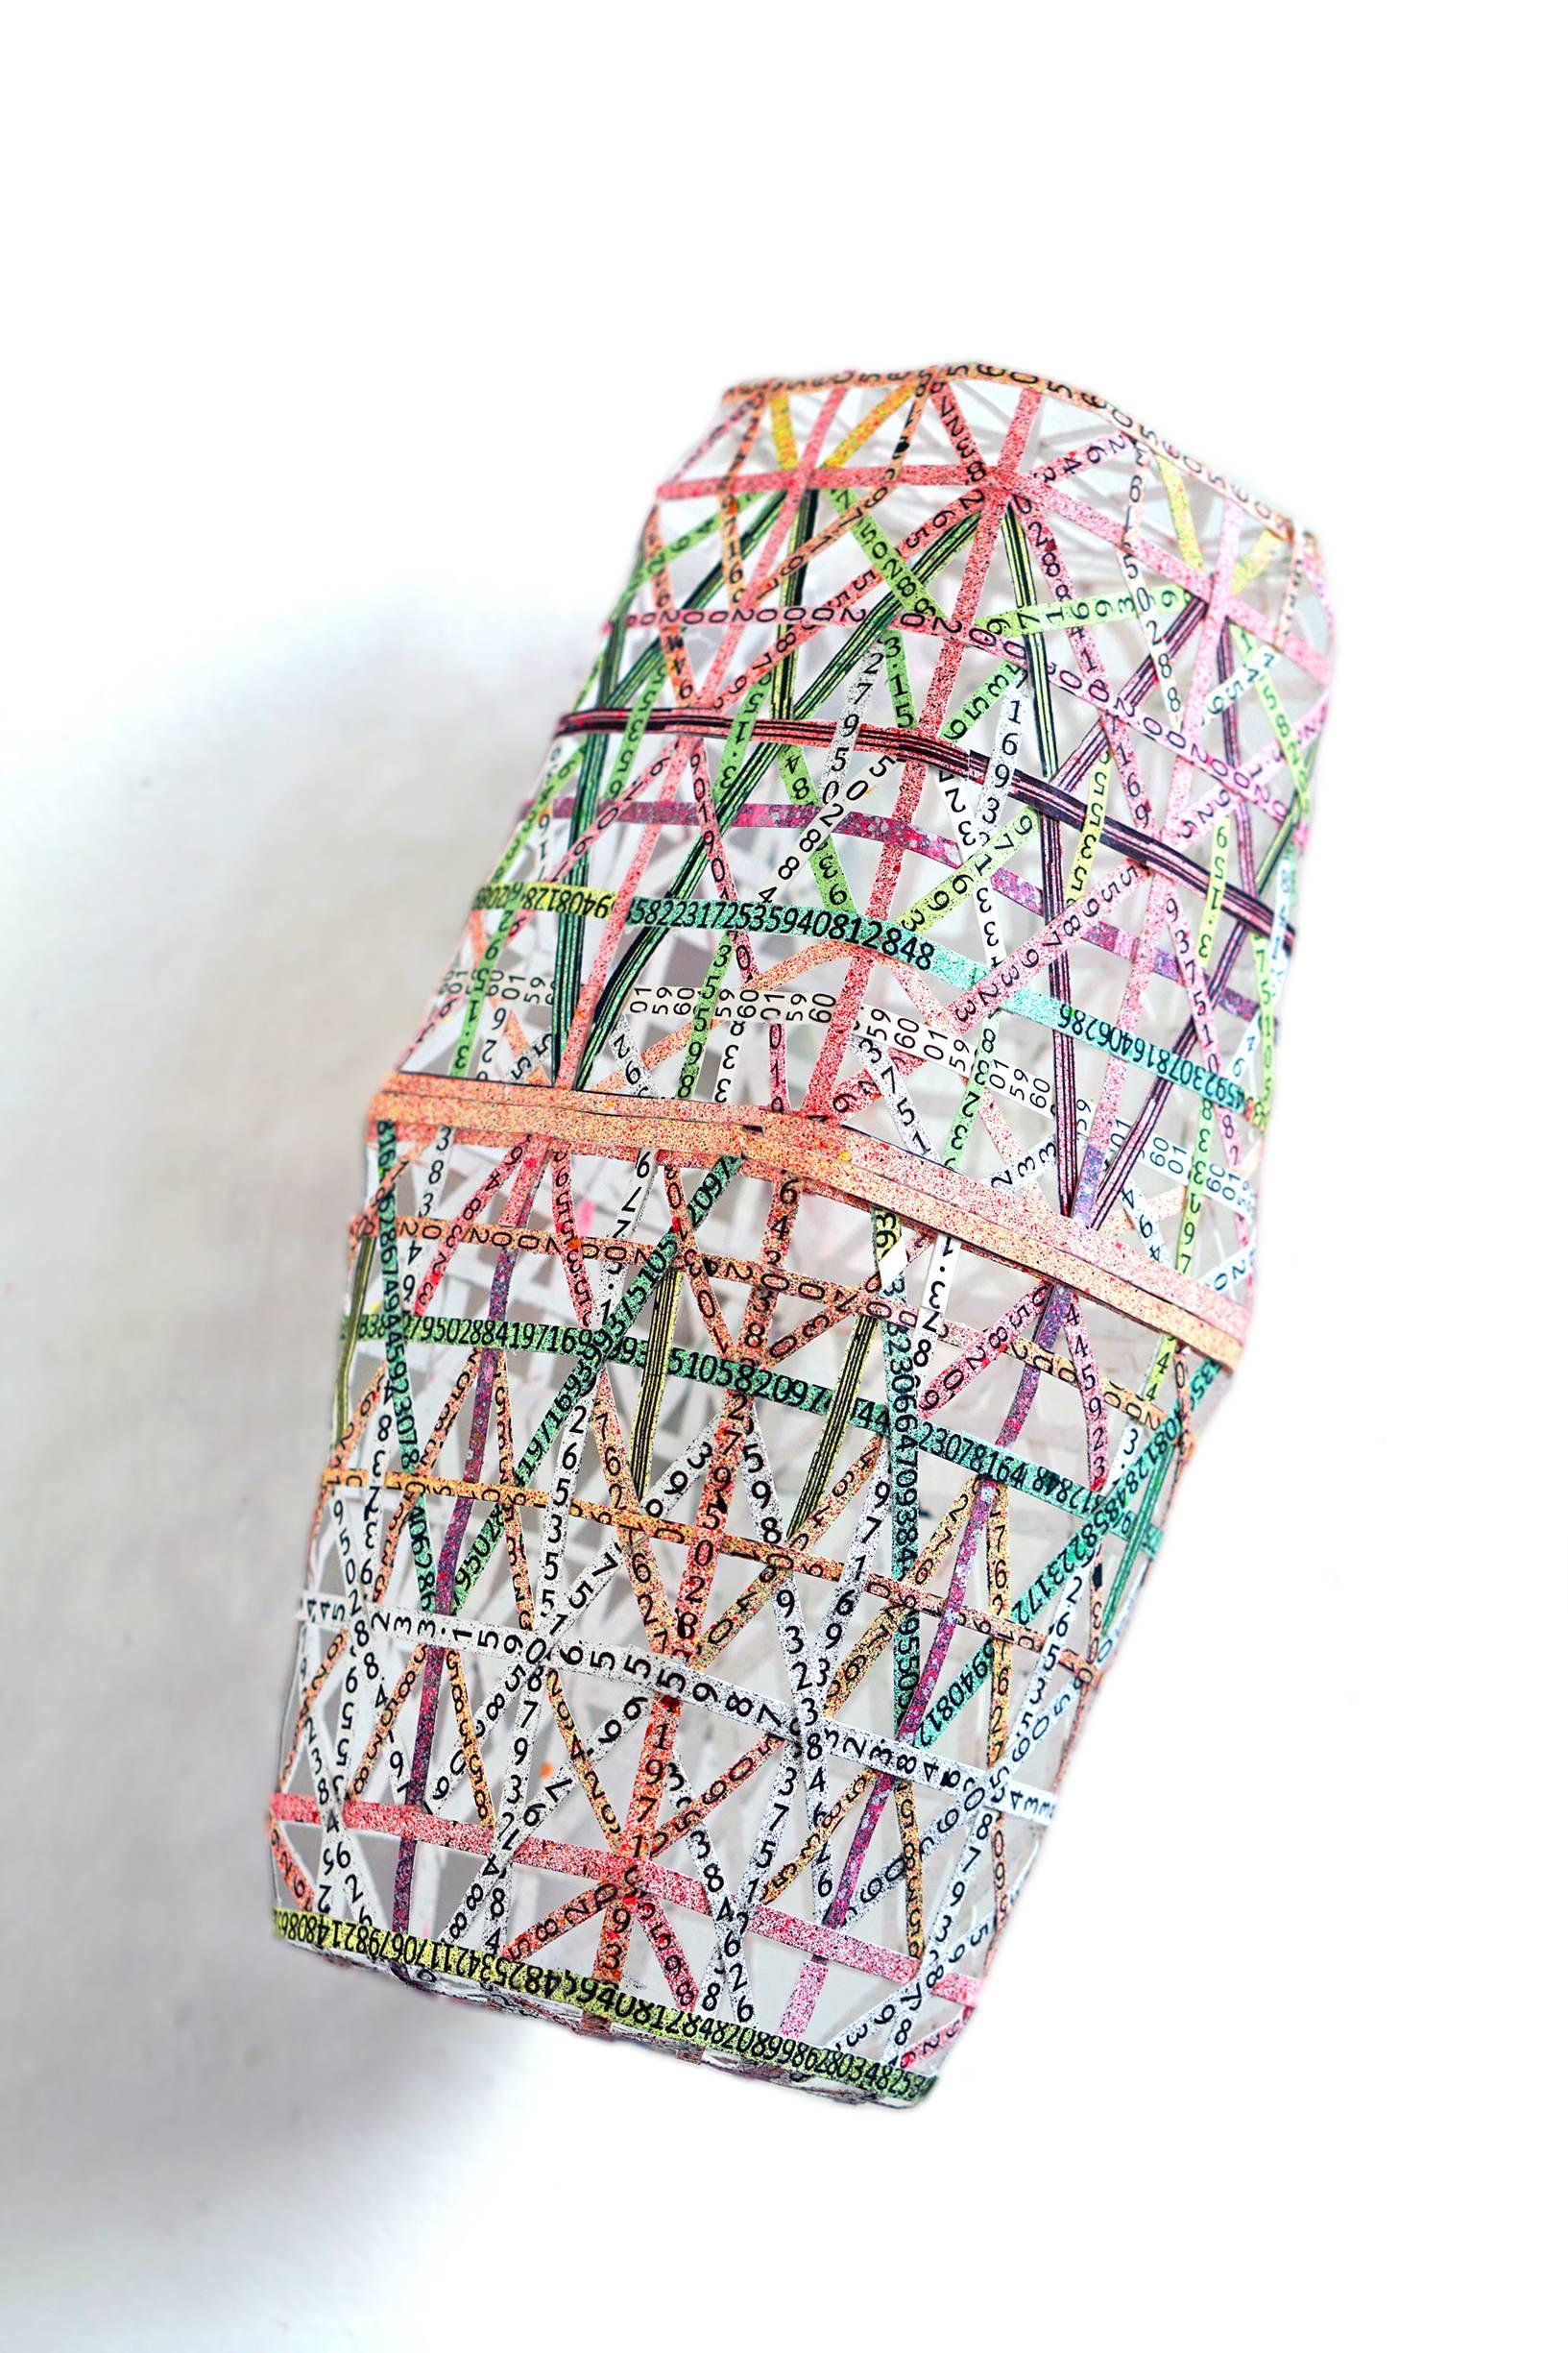 Nancy Baker, Pink Box, 2017, papier, peinture acrylique, impression pigmentaire numérique